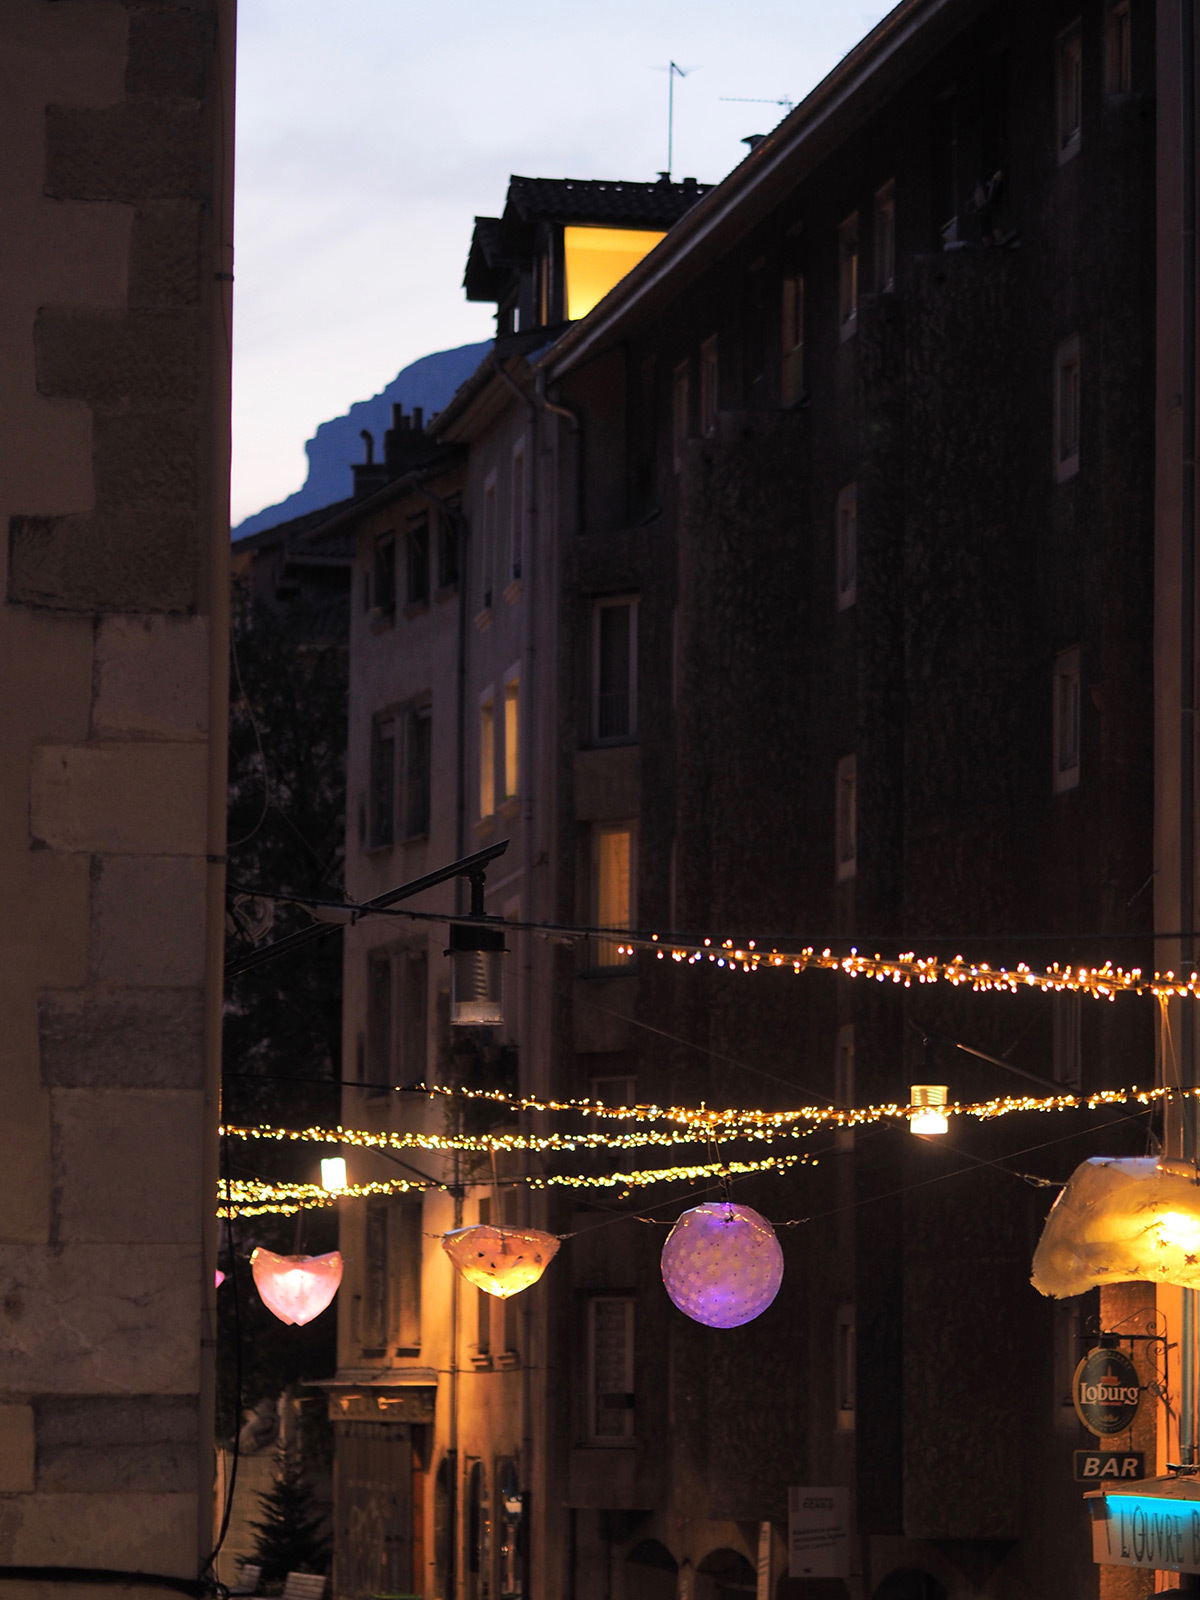 Les CoCColithes de la rue Saint-Laurent, Grenoble - Collectif Abat-Jour - Decembre 2015 © Anastasia Sokolnikova et Jean-David Boucher